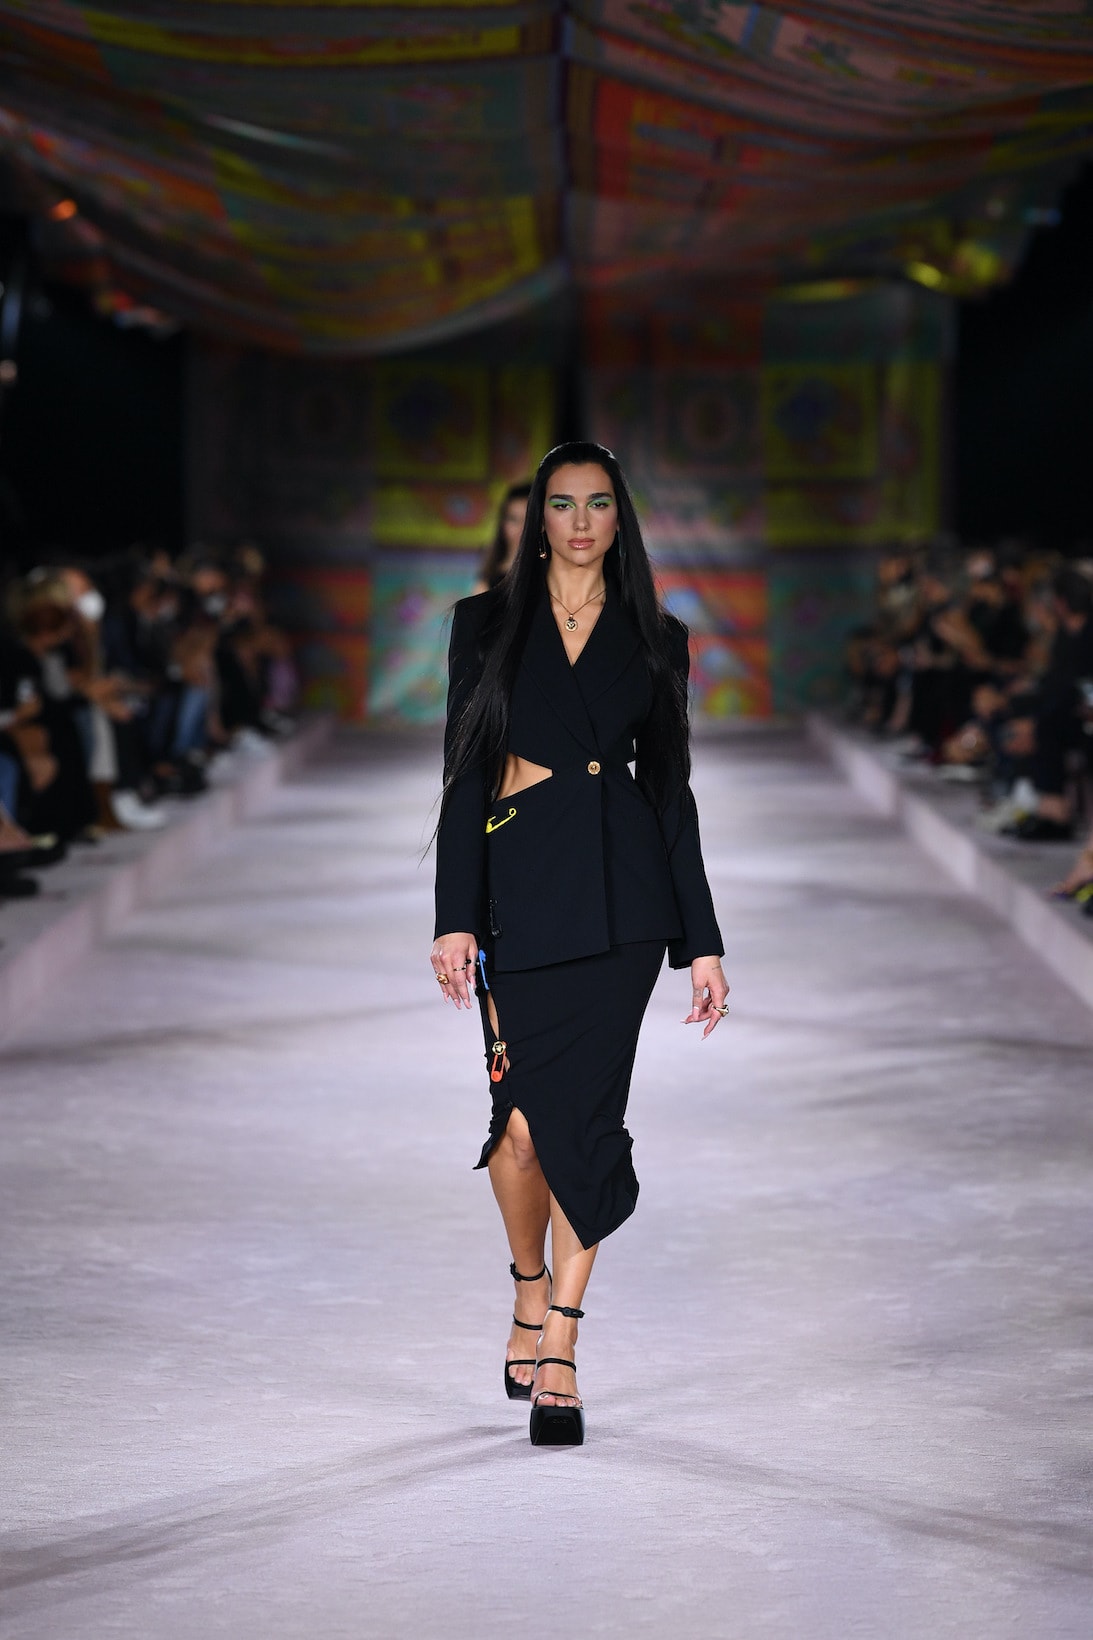 Milan Fashion Week: Donatella Versace's Star-Power Runway